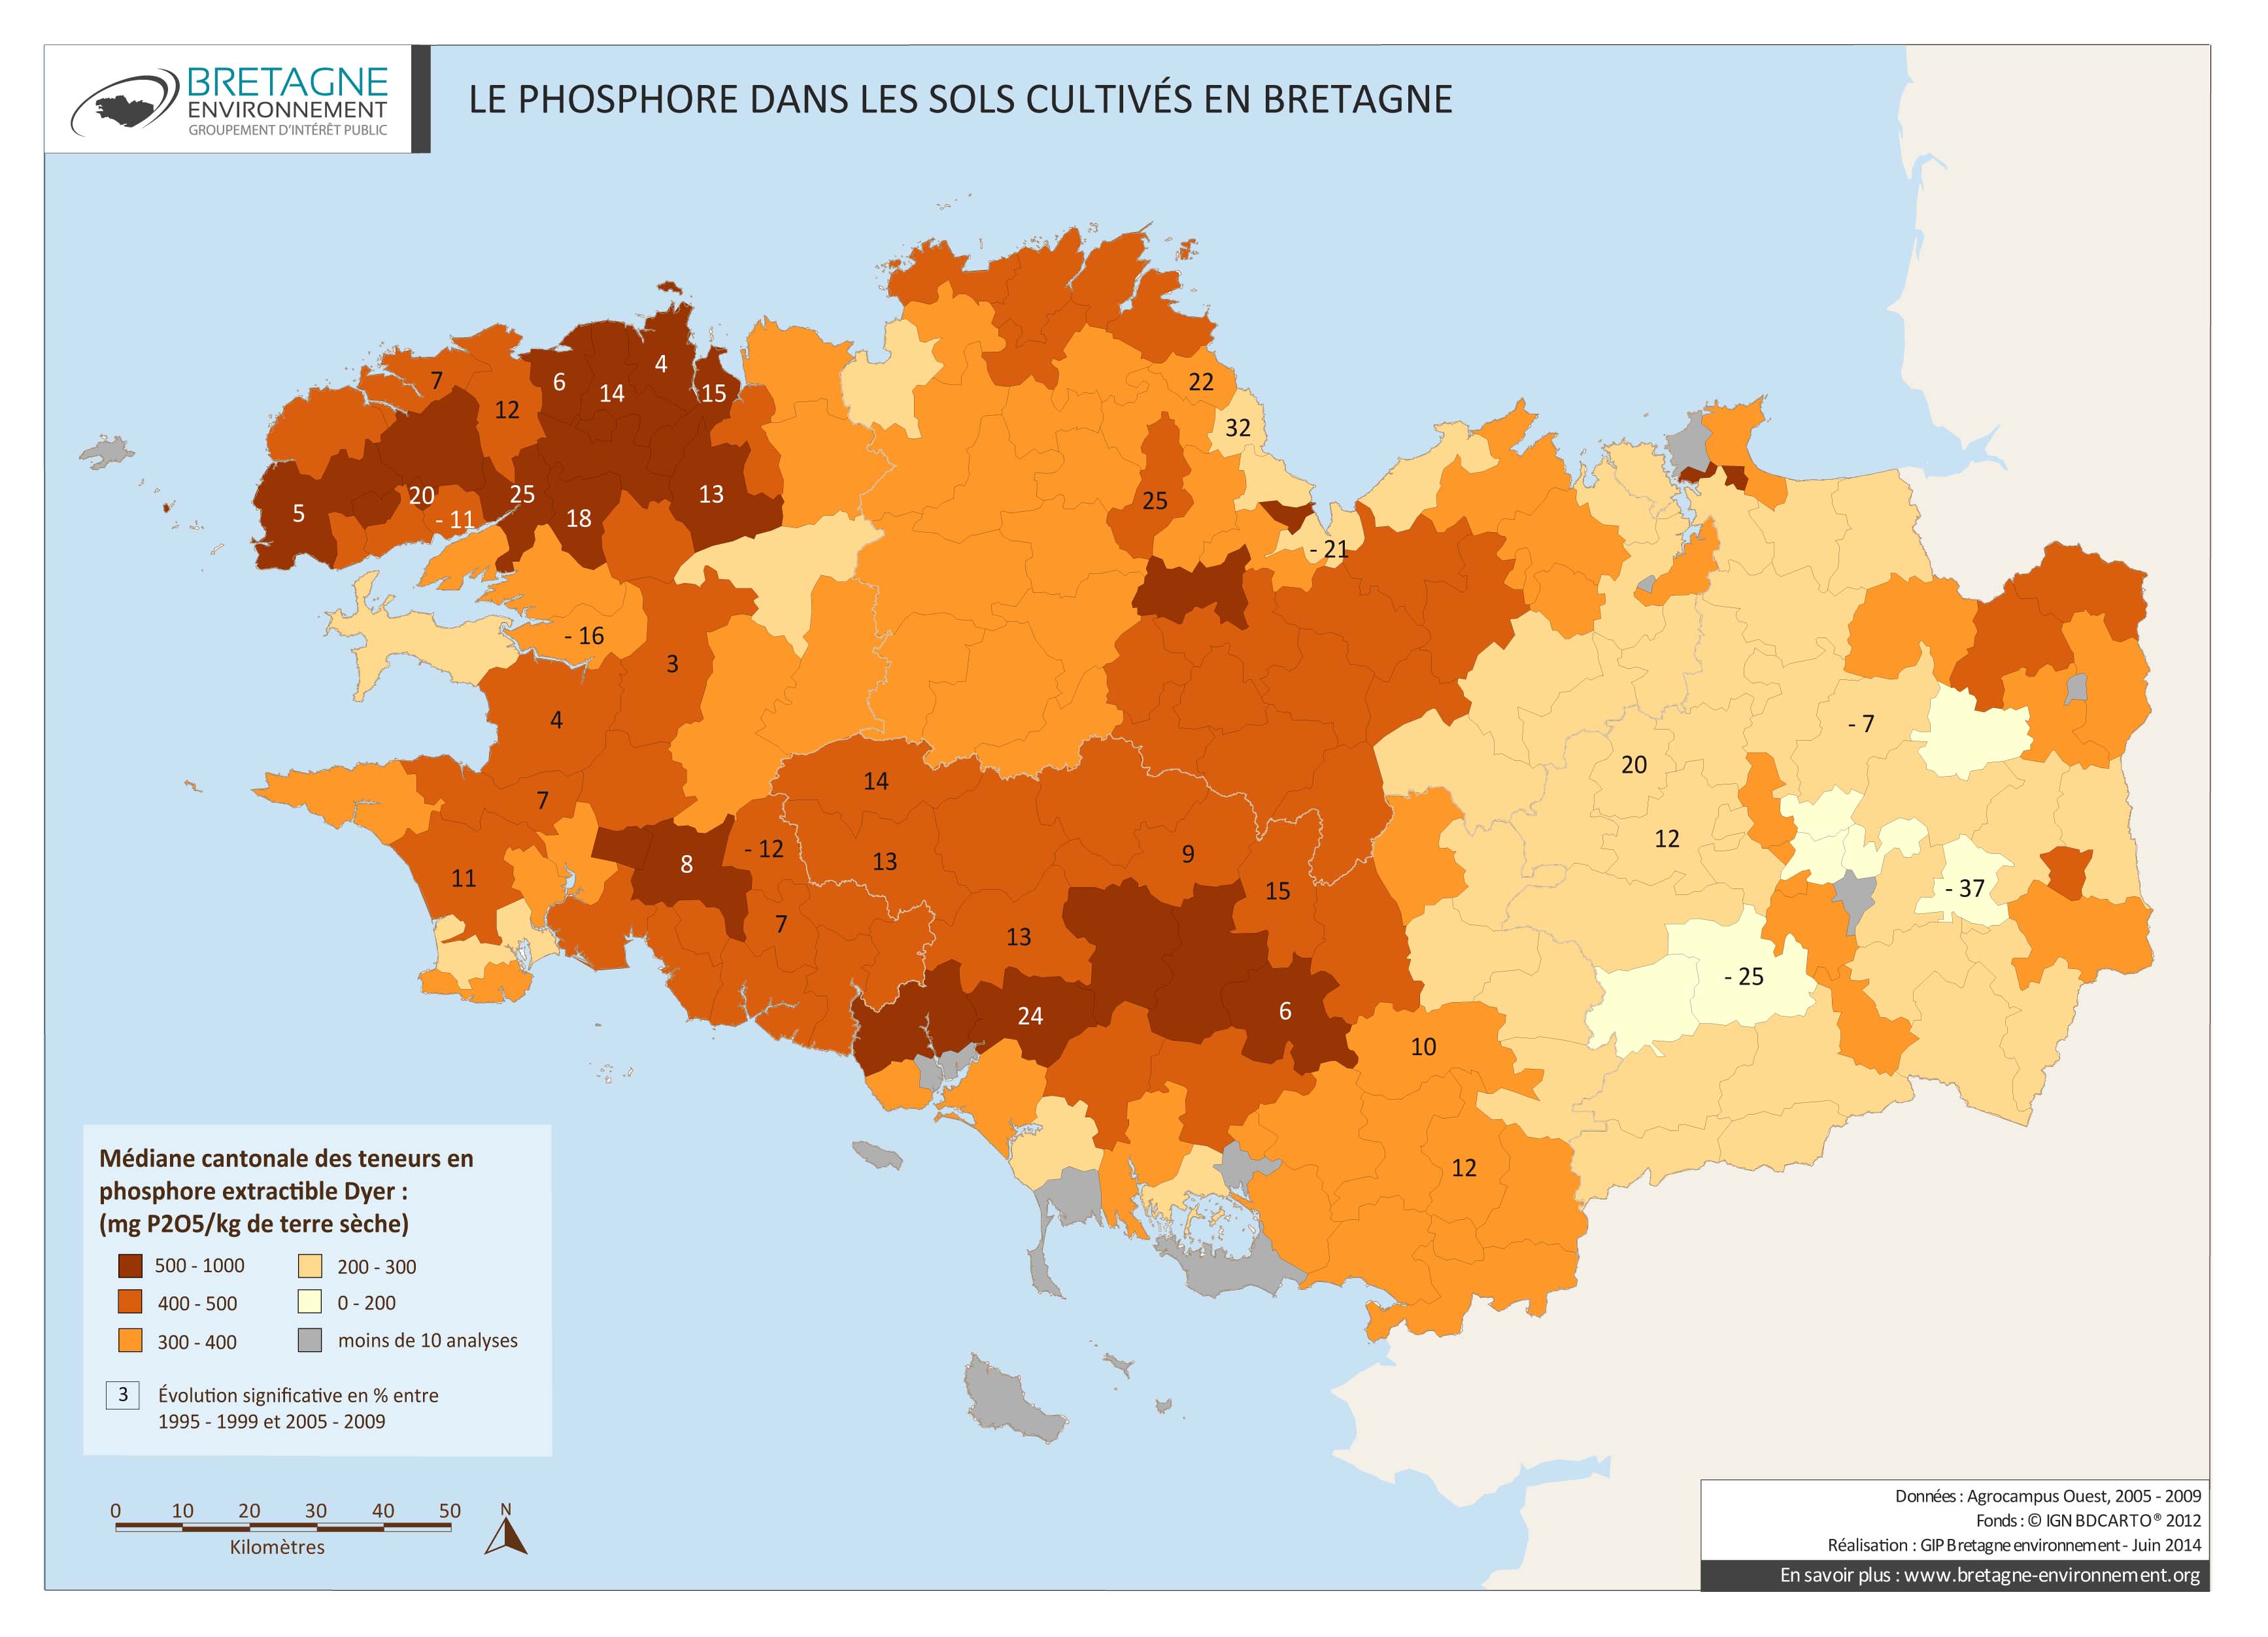 Le phosphore dans les sols cultivés bretons de 2005 à 2009